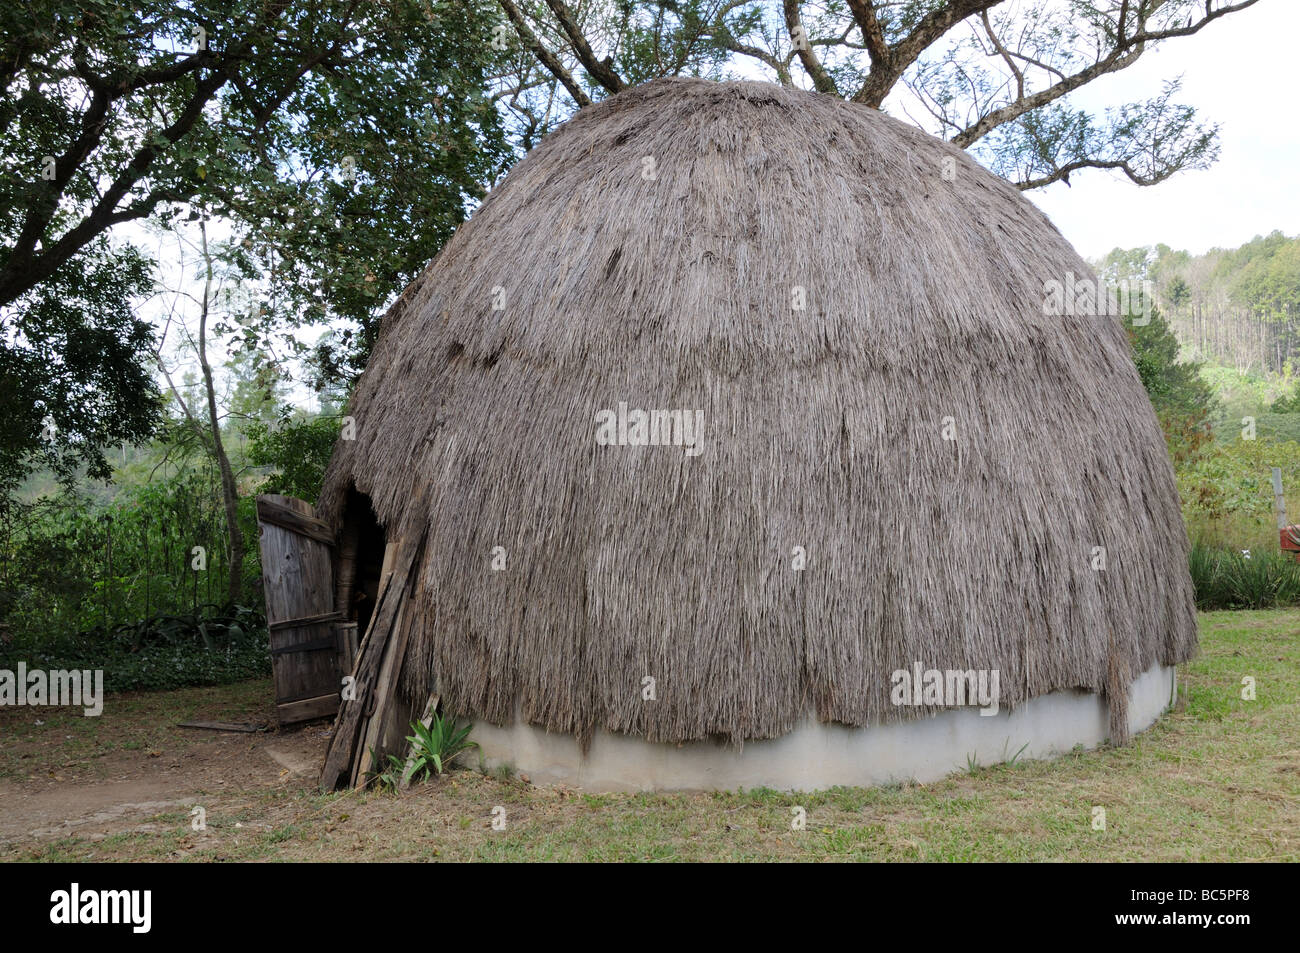 Traditionelle afrikanische Bienenstock Hütten Swasiland Aouth Afrika Stockfoto